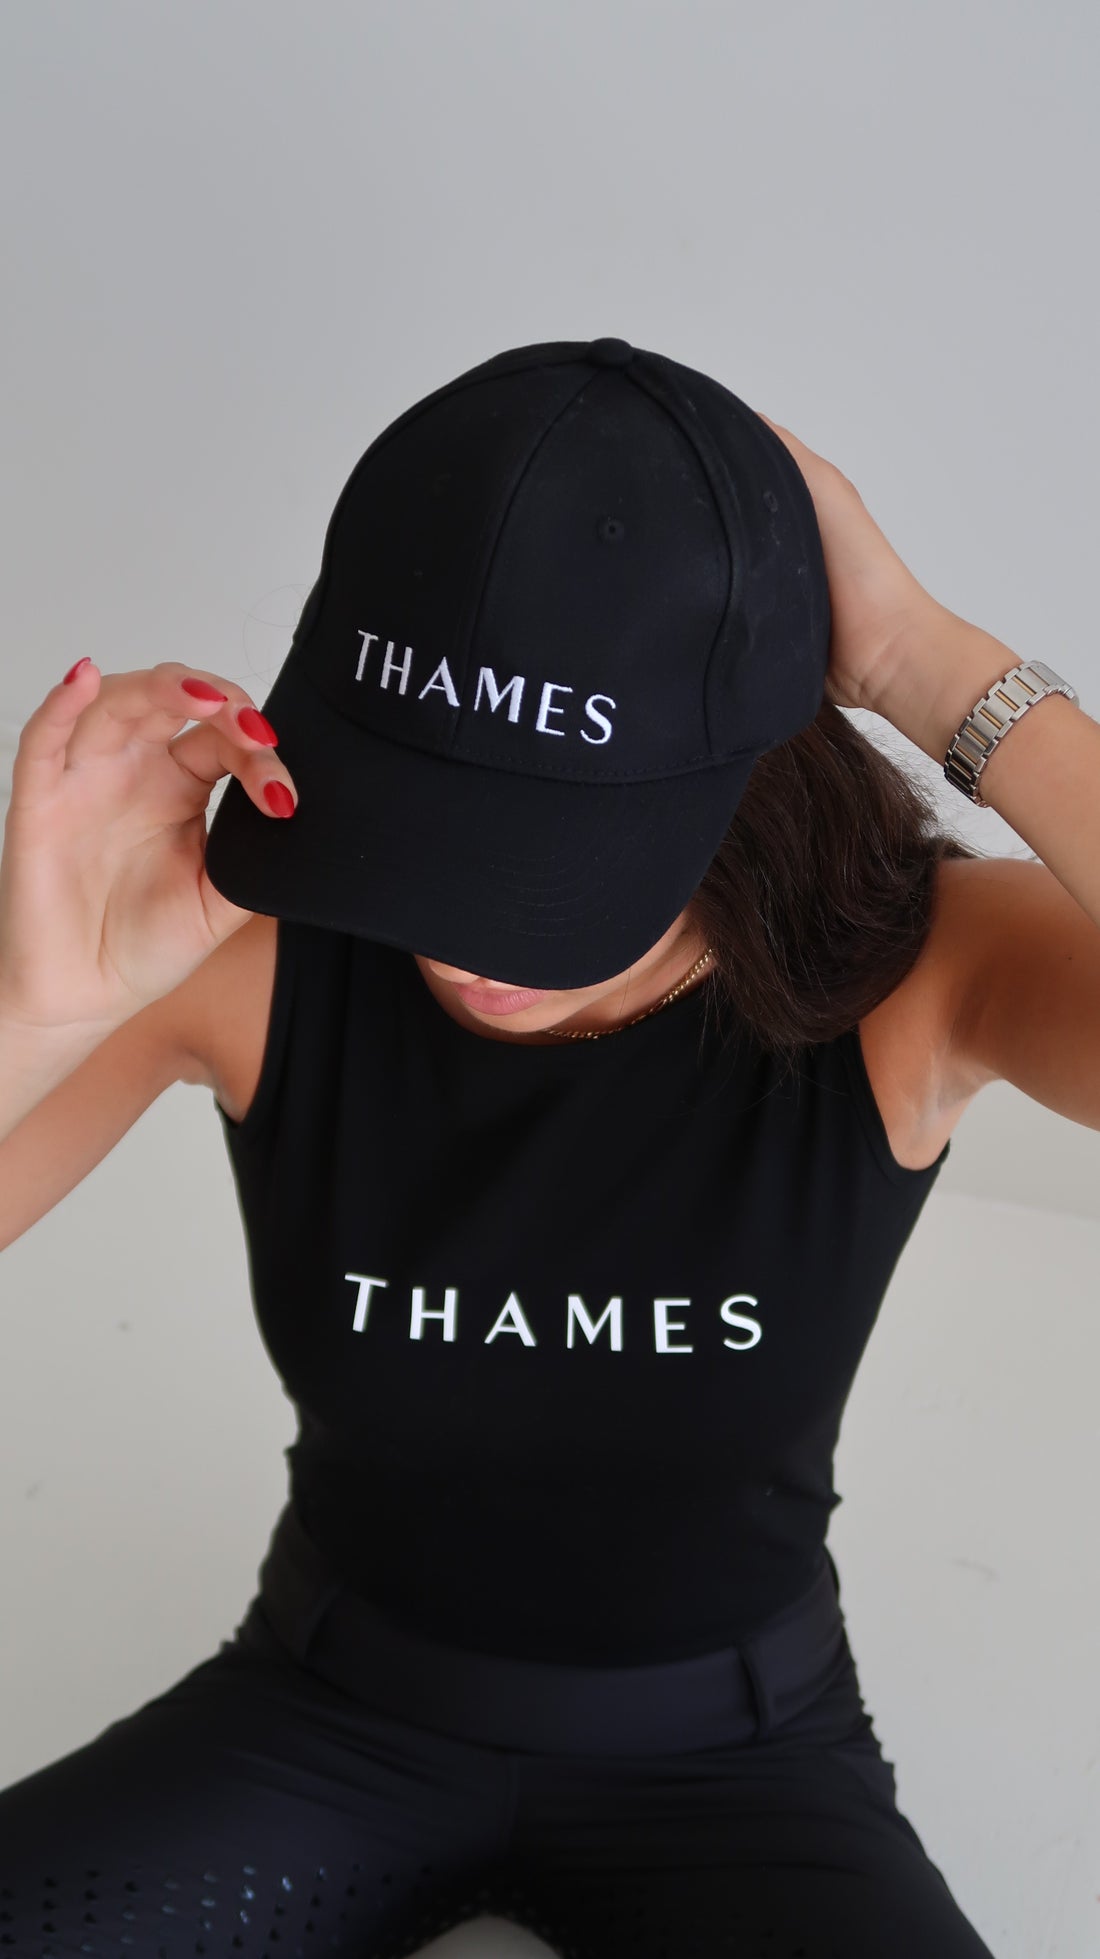 Thames Black Cap 